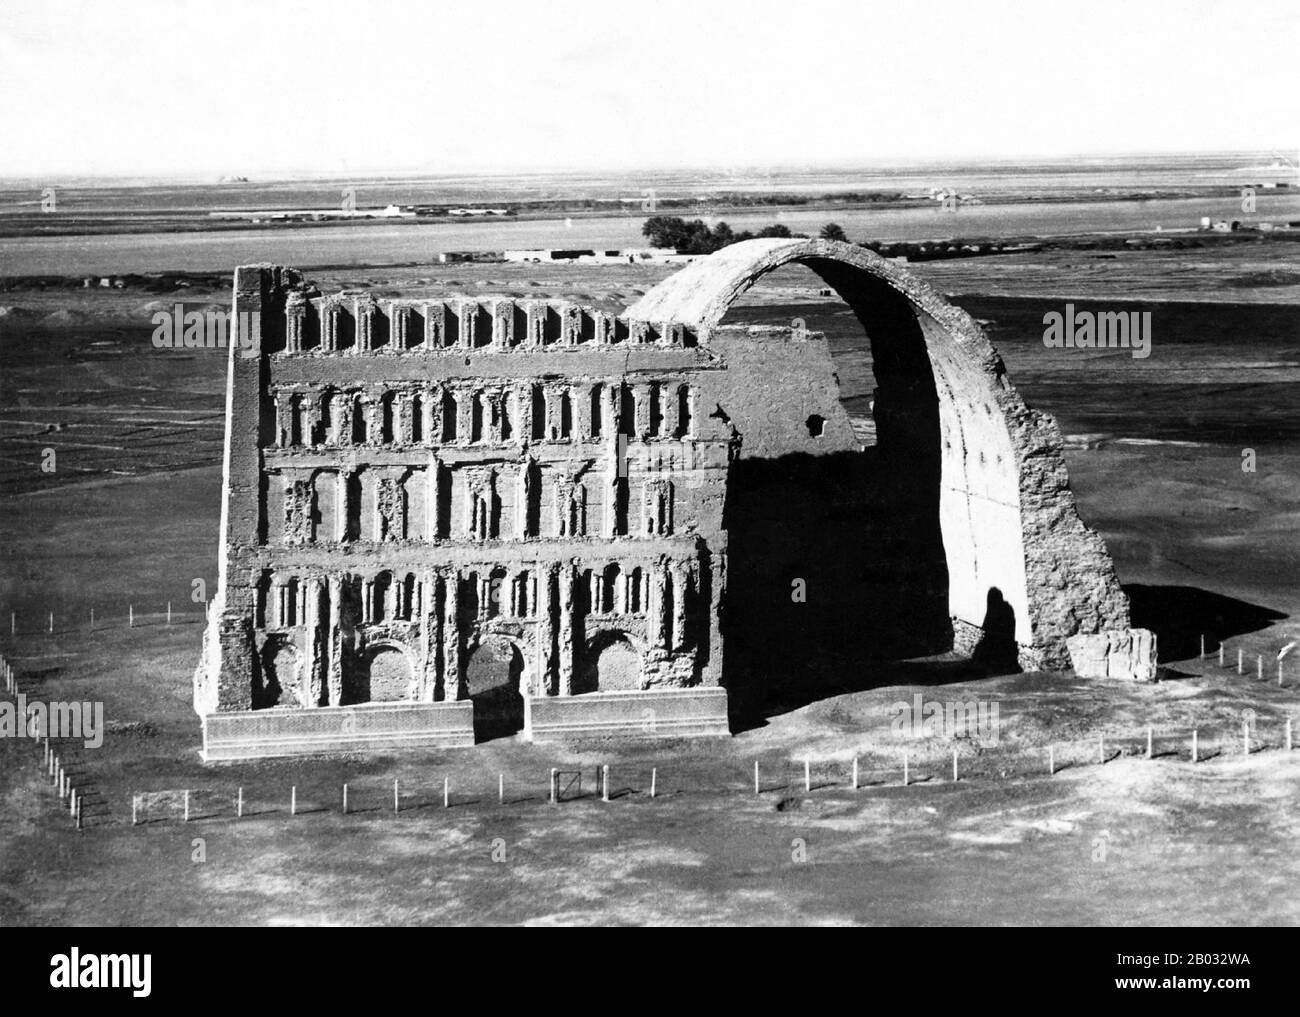 Ctesiphon war die Hauptstadt des parthischen und sasanischen Empires (247 v. Chr.-224 u. z. bzw. 224-651 u. z.). Es war eine der großen Städte des spätantiken Mesopotamiens. Sein heute noch auffälligstes Bauwerk ist der große Torbogen von Ctesiphon. Es lag am östlichen Ufer des Tigris gegenüber von wo die griechische Stadt Seleucia stand und Nordosten des alten Babylons. Heute liegen die Überreste der Stadt im Gouvernement Bagdad, Irak, etwa 35 km südlich der Stadt Bagdad. Ctesiphon war von 570 CE die größte Stadt der Welt, bis zu seinem Sturz 637 CE, d. H Stockfoto